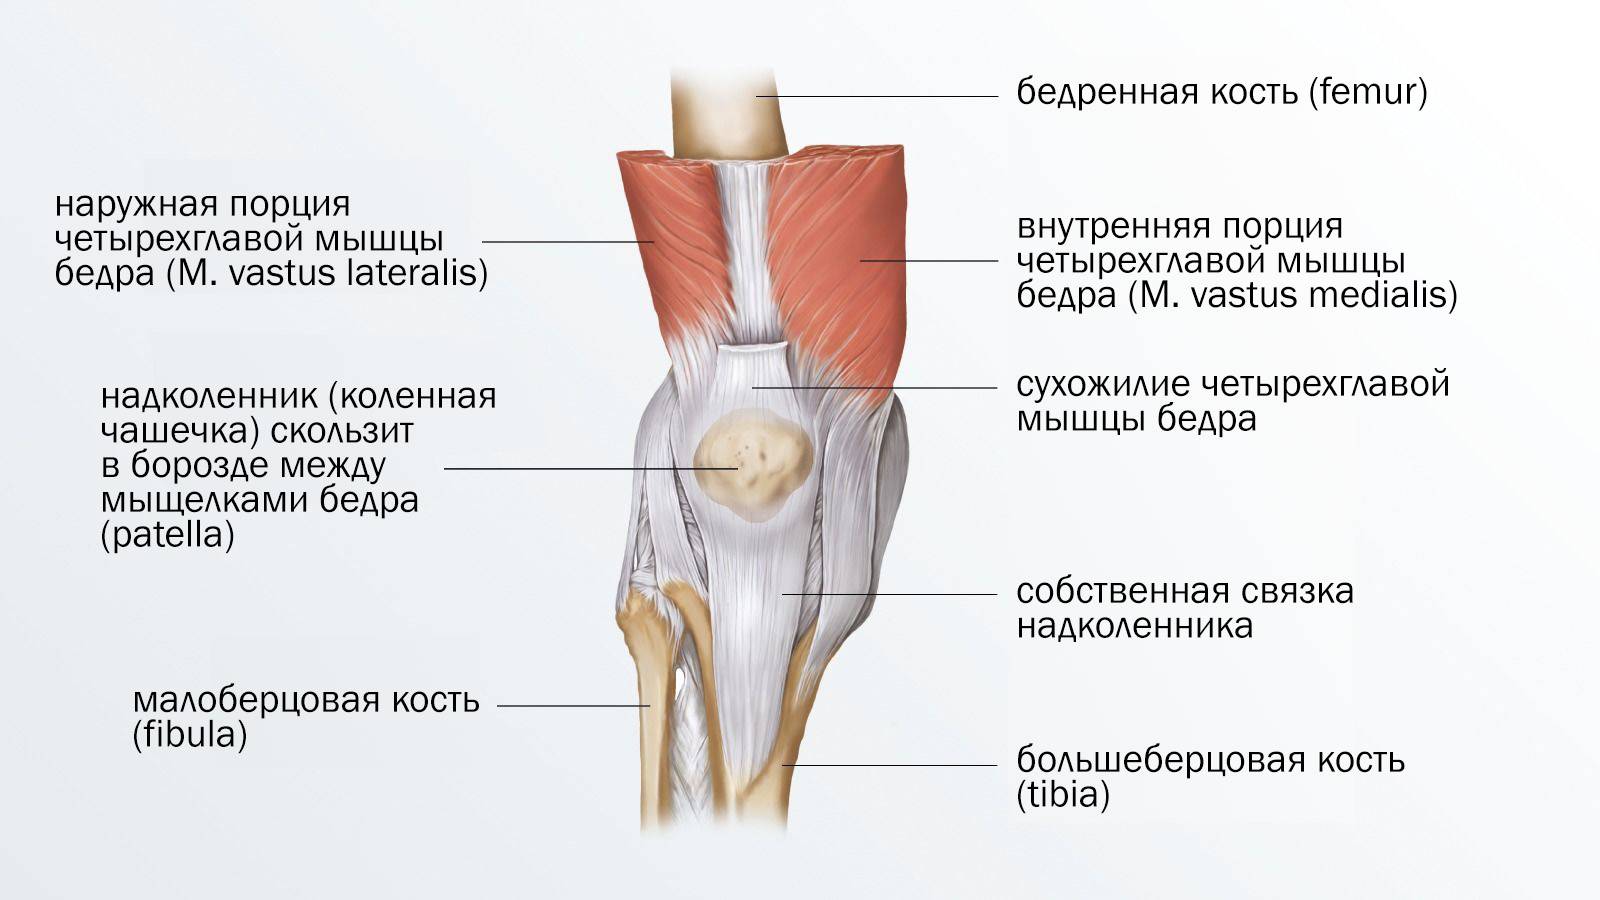 Пателлофеморальный болевой синдром коленных суставов